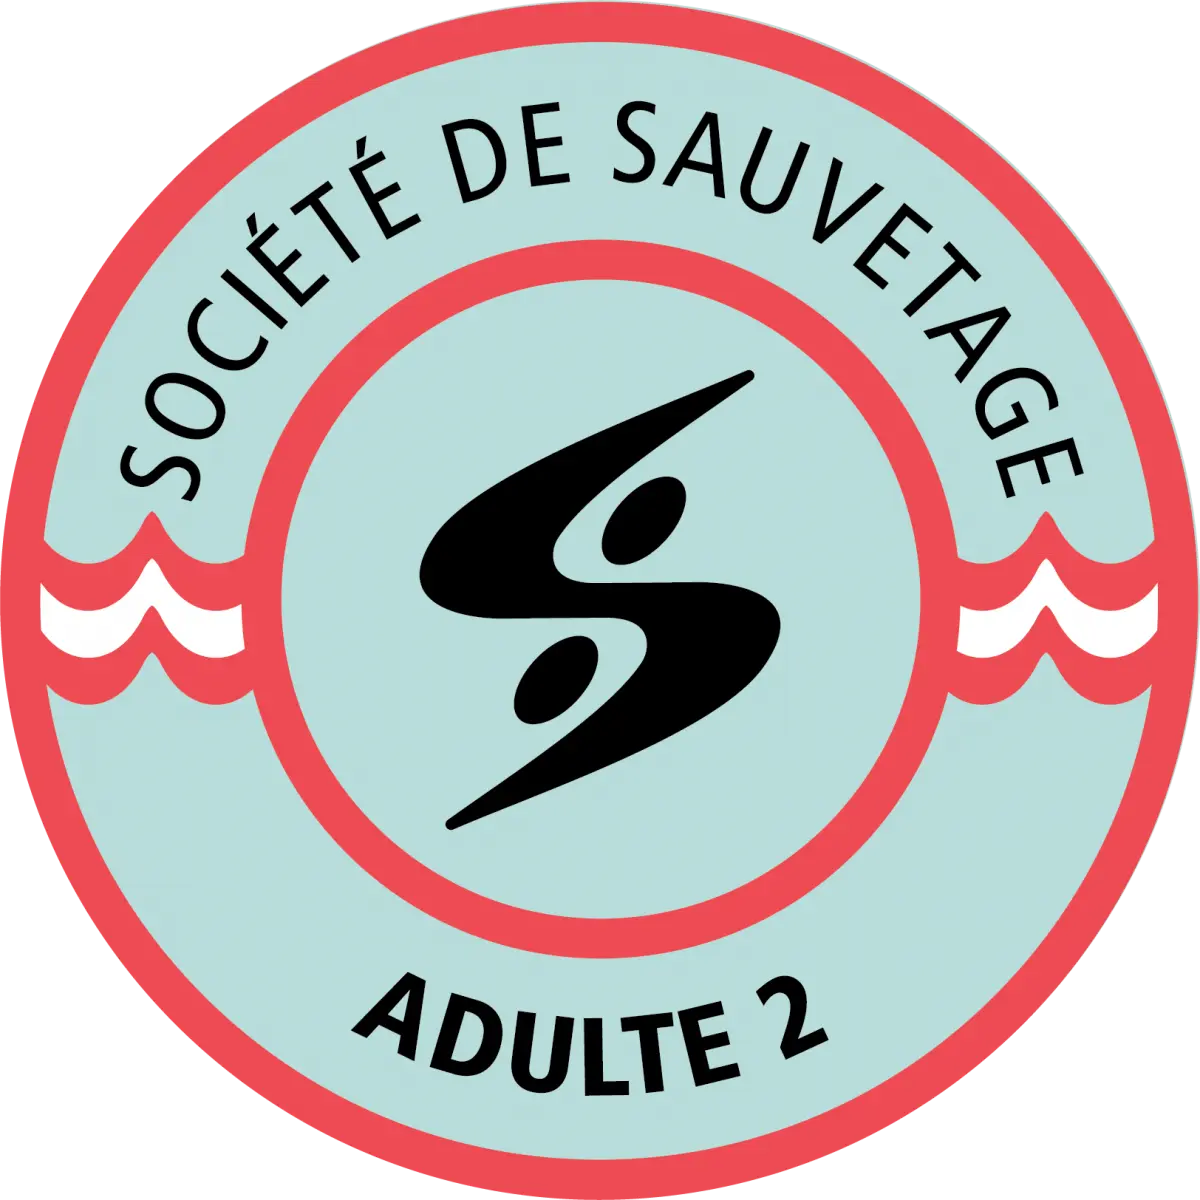 Badge Adulte 2